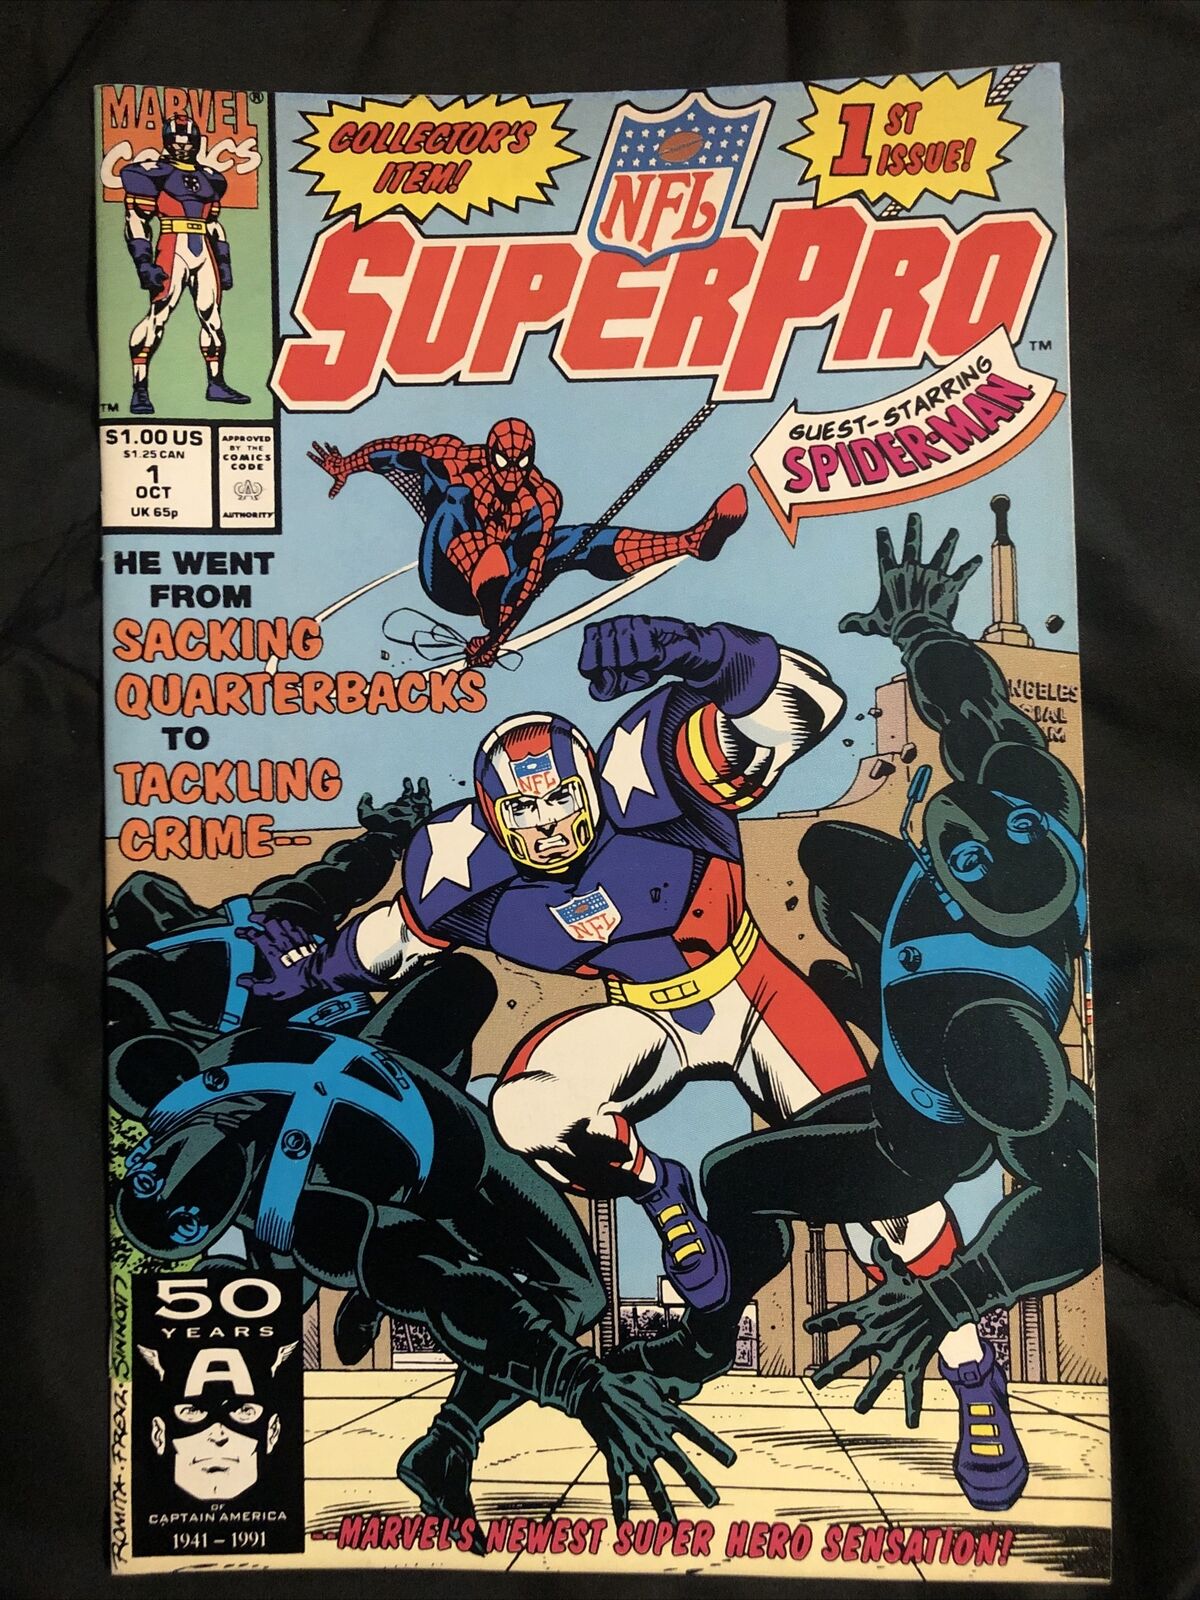 Marvel Comics NFL Super Pro Vol 1 No 1 October 1991 Spider-Man